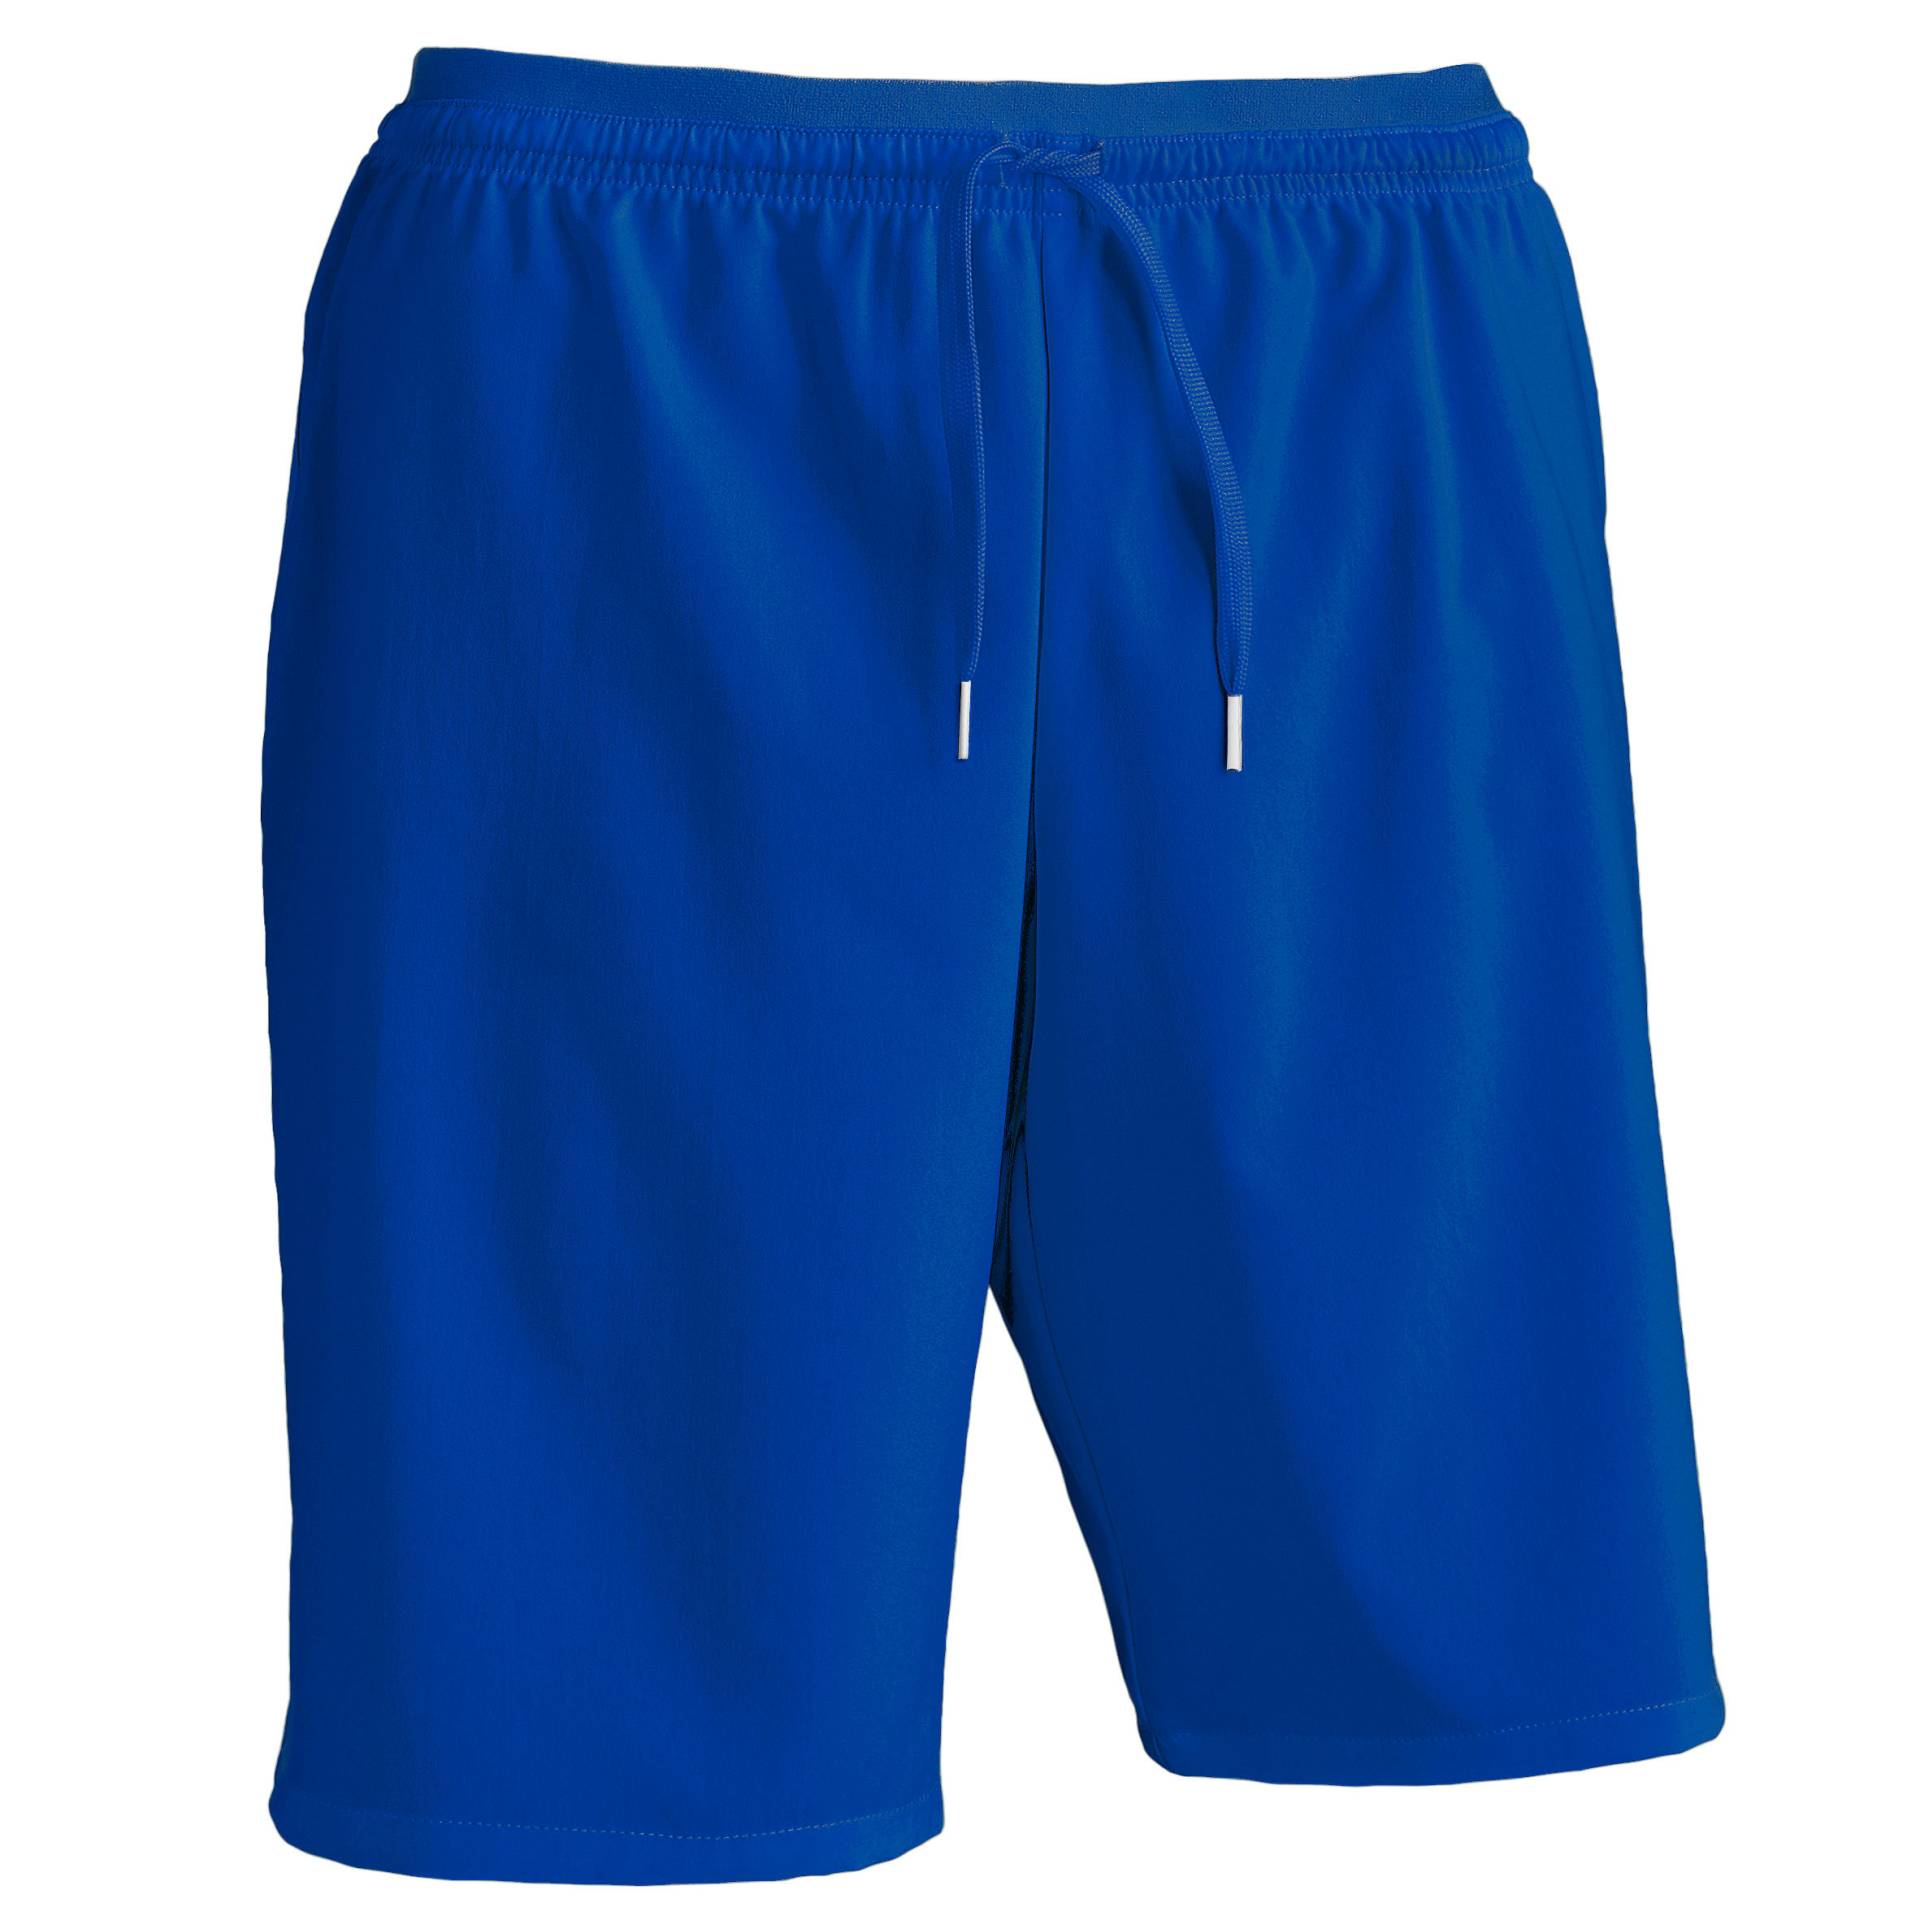 Damen/Herren Fussball Shorts Viralto blau von KIPSTA